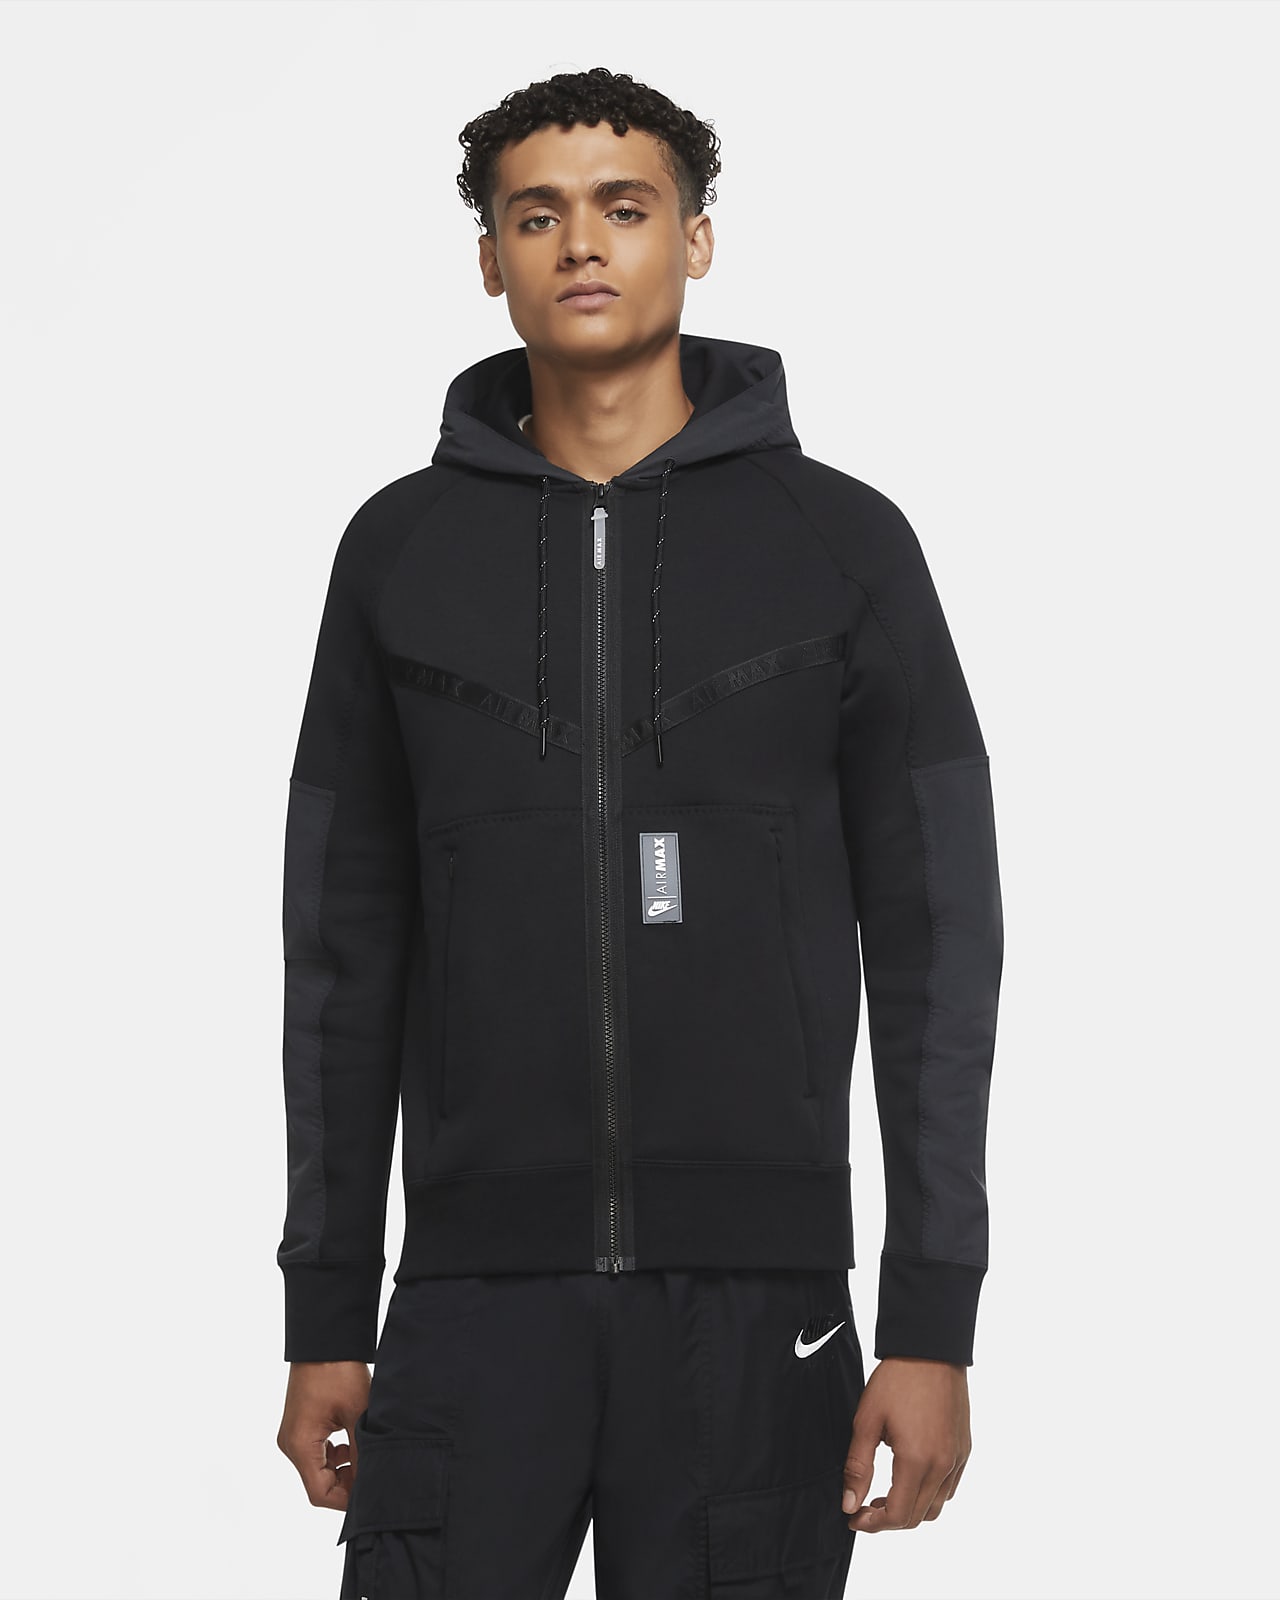 Nike Sportswear Air Max Men's Full-Zip Fleece Hoodie. Nike LU